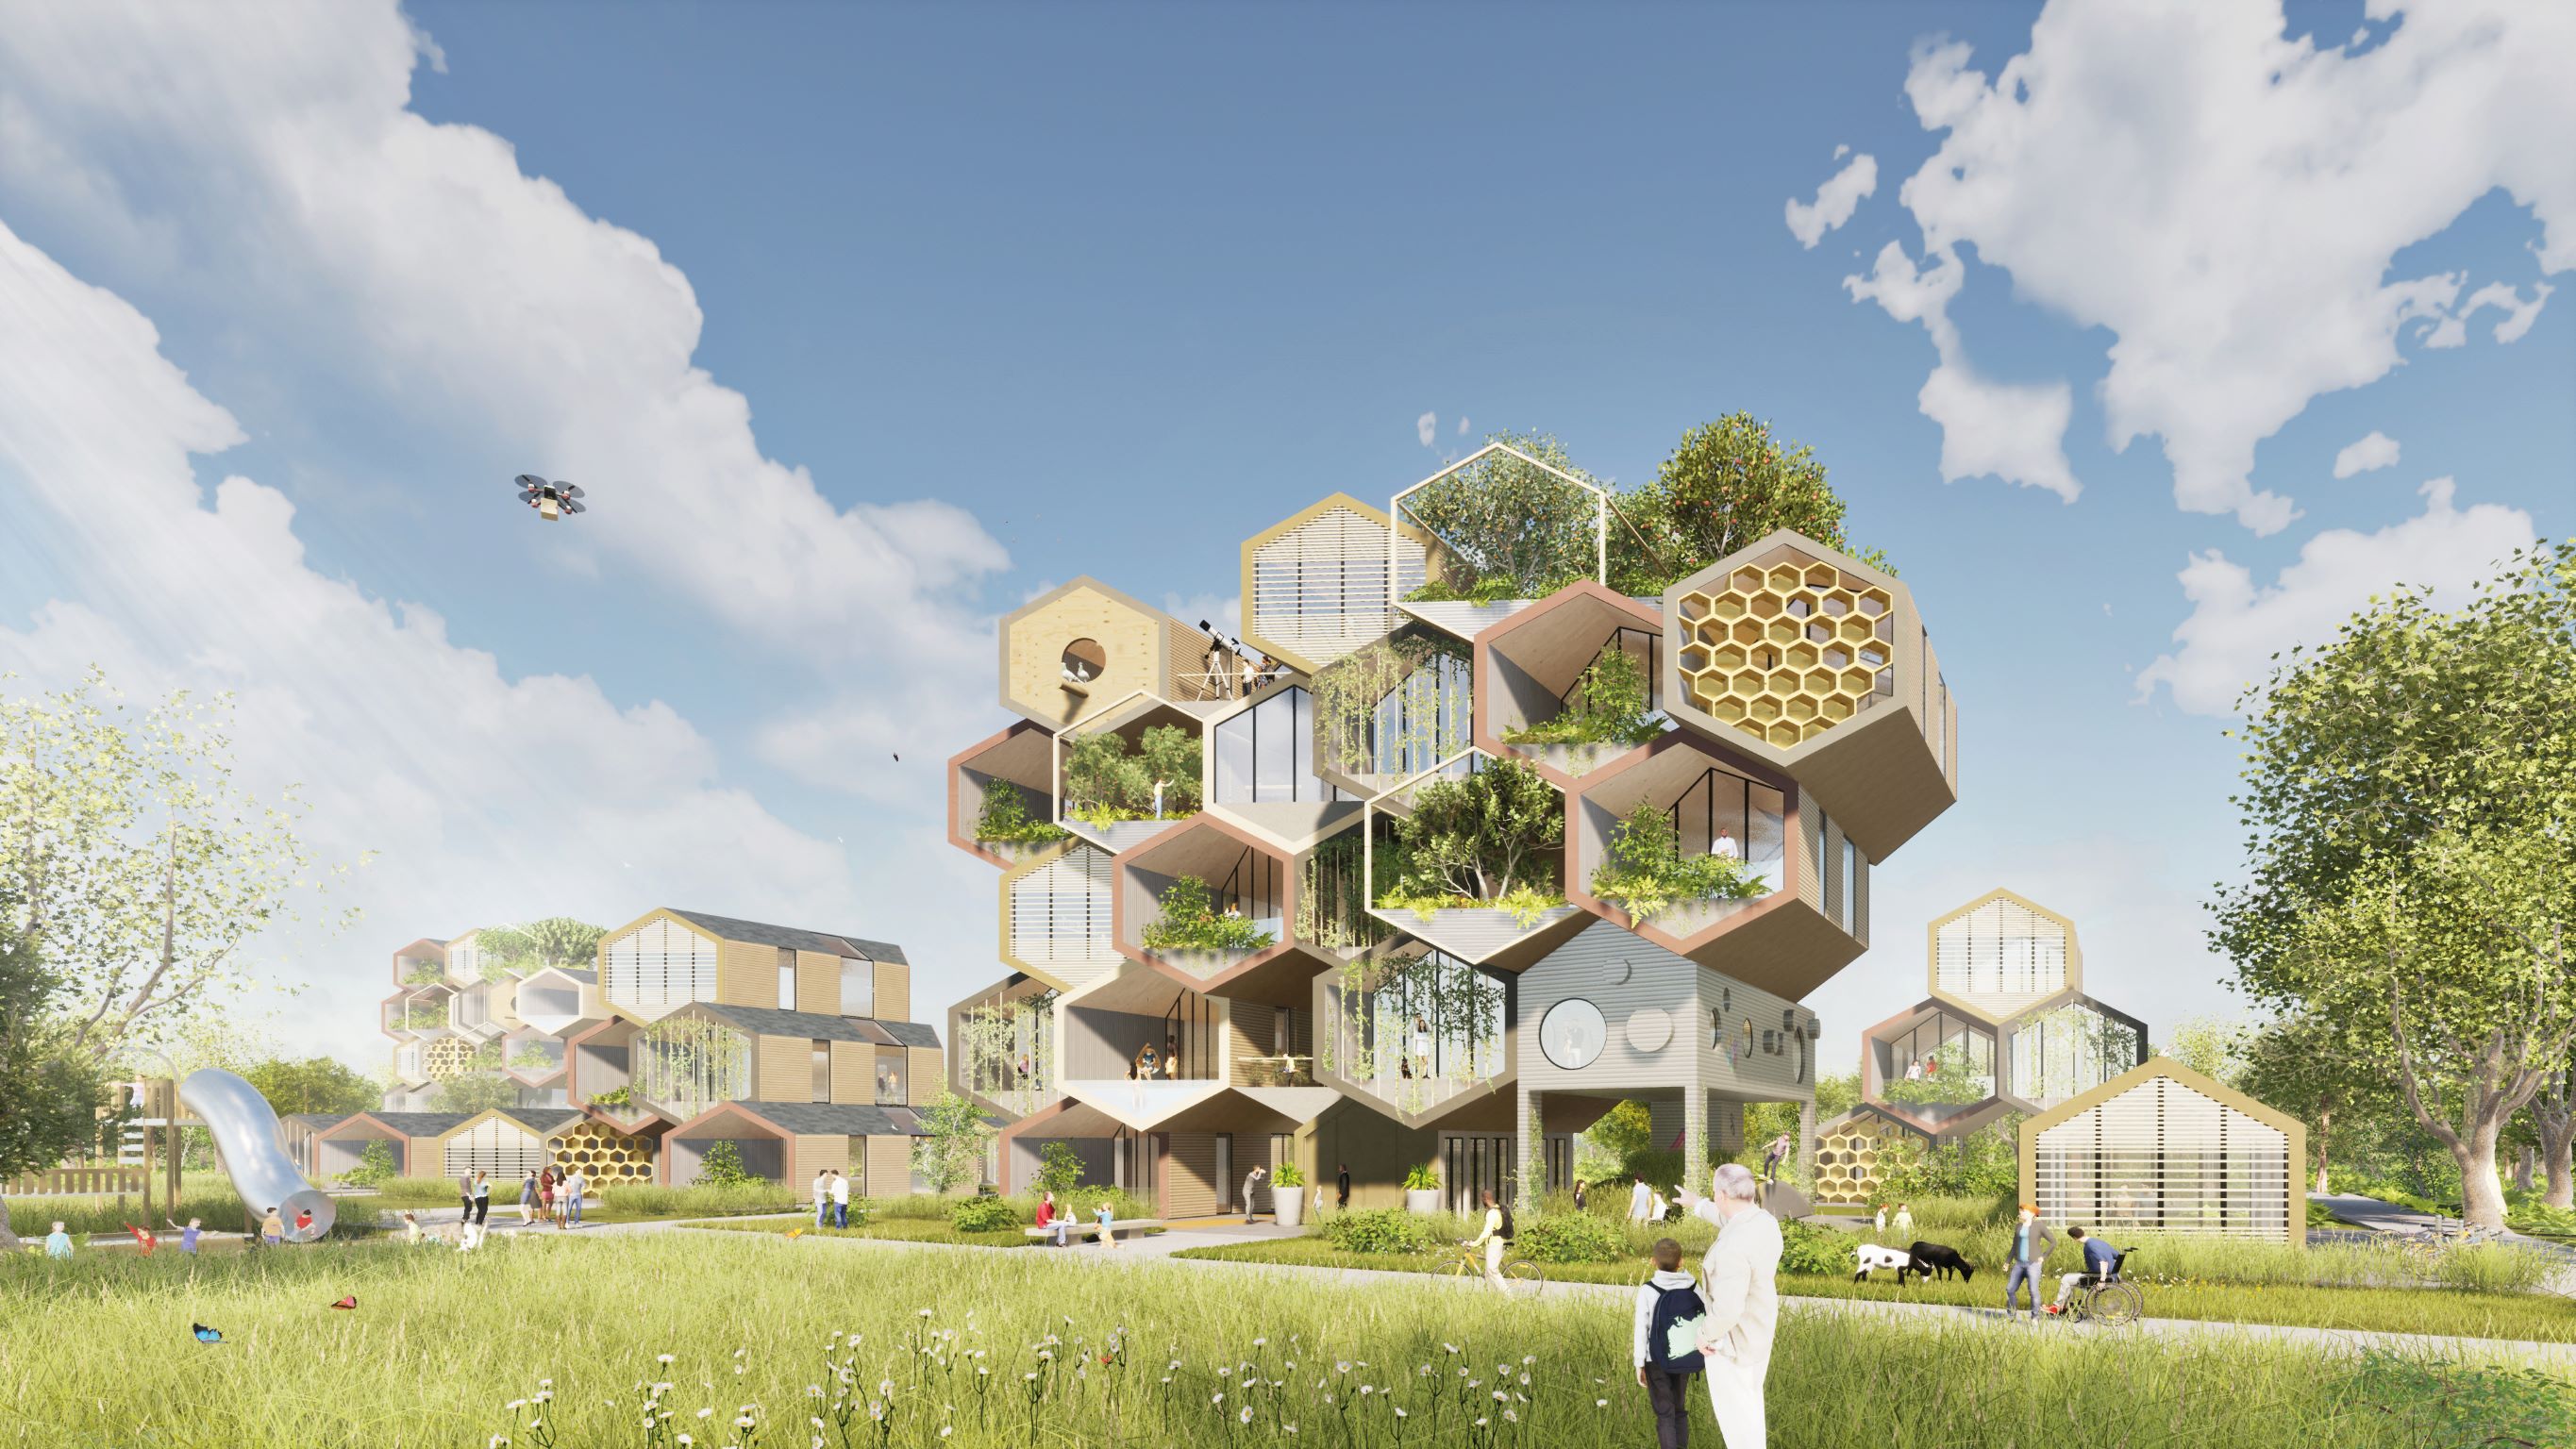 未來系環保建築 - 蜂巢式未來住宅